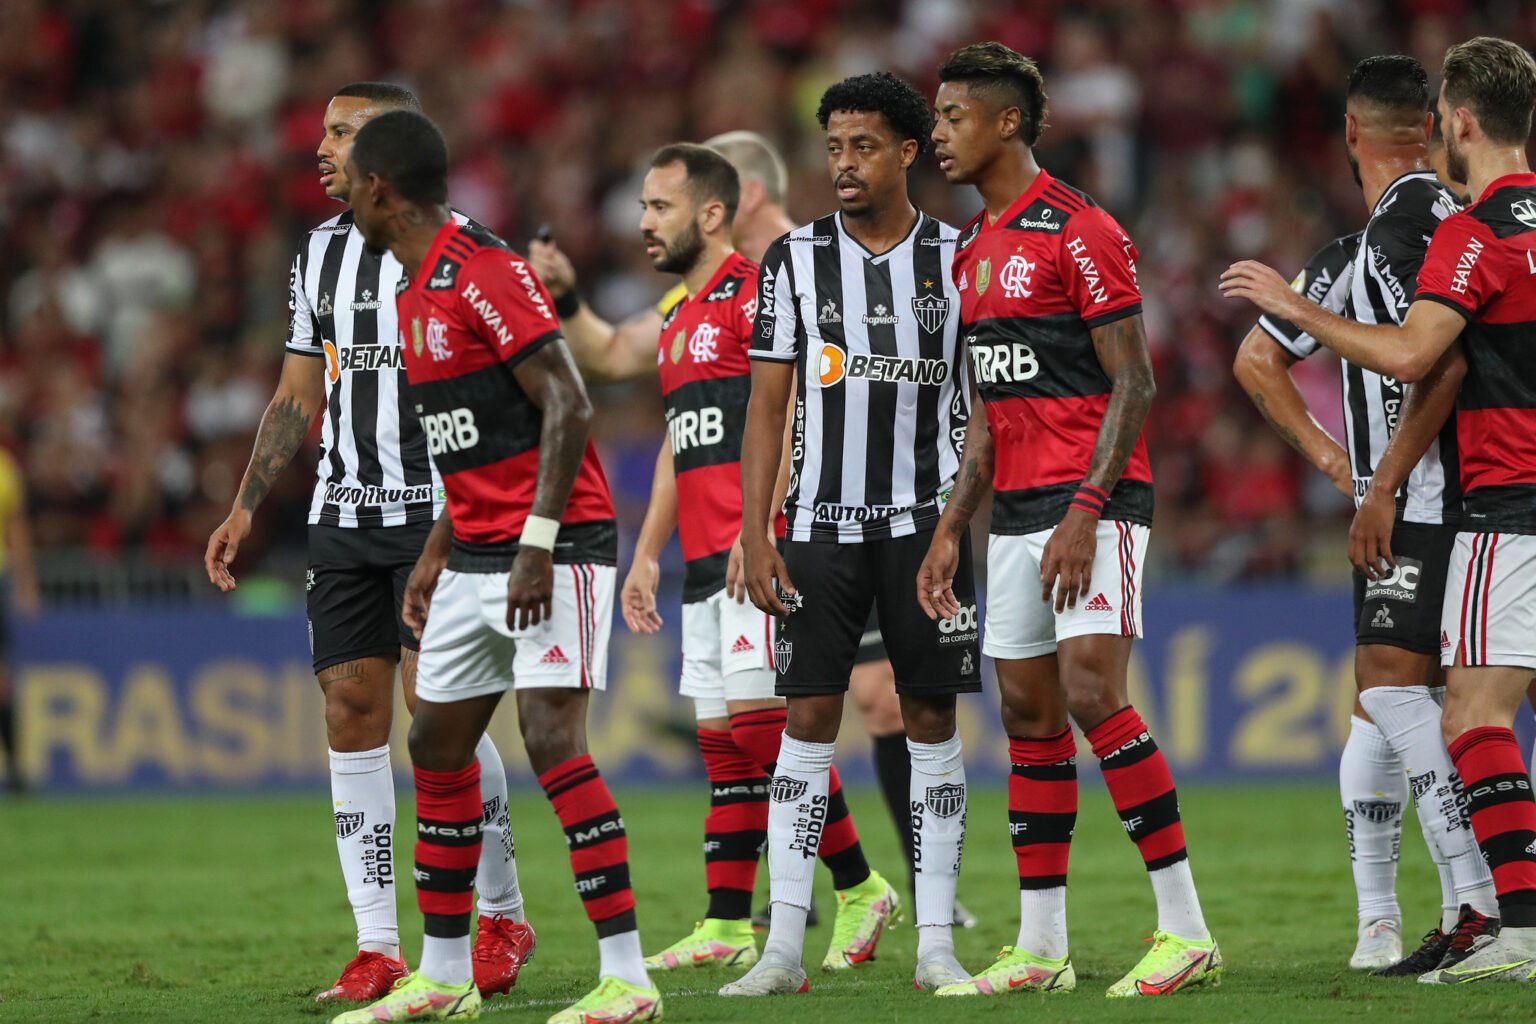 Vale taça! Atlético enfrenta Flamengo em busca do título inédito da Supercopa